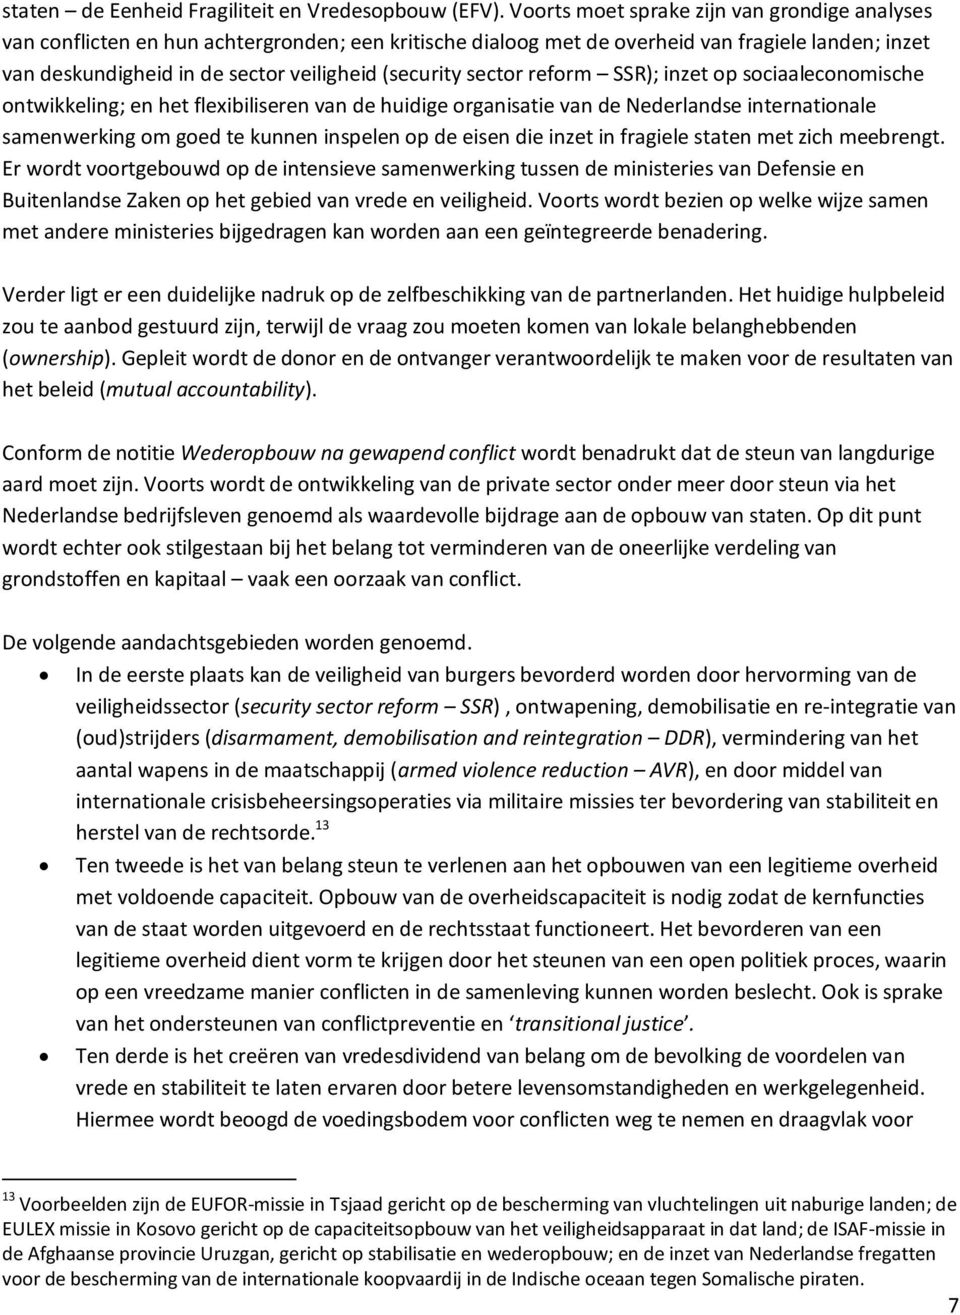 sector reform SSR); inzet op sociaaleconomische ontwikkeling; en het flexibiliseren van de huidige organisatie van de Nederlandse internationale samenwerking om goed te kunnen inspelen op de eisen